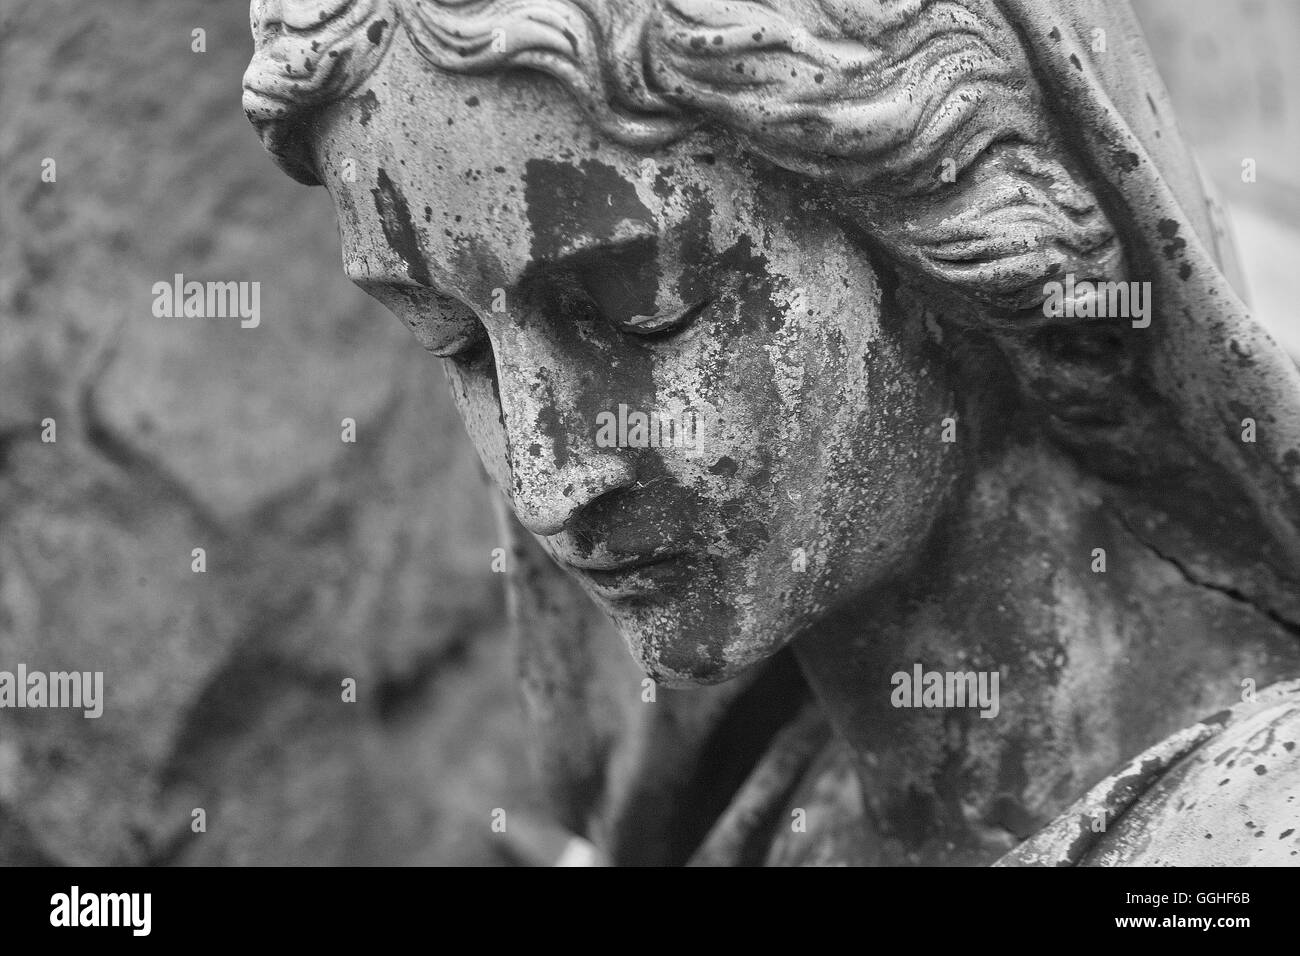 Lamentablemente la escultura mujer, niña, escultura, tristemente enfrentan graves, dolorosos / grab-skulptur, trauernde frau schwarz-weiß foto Foto de stock